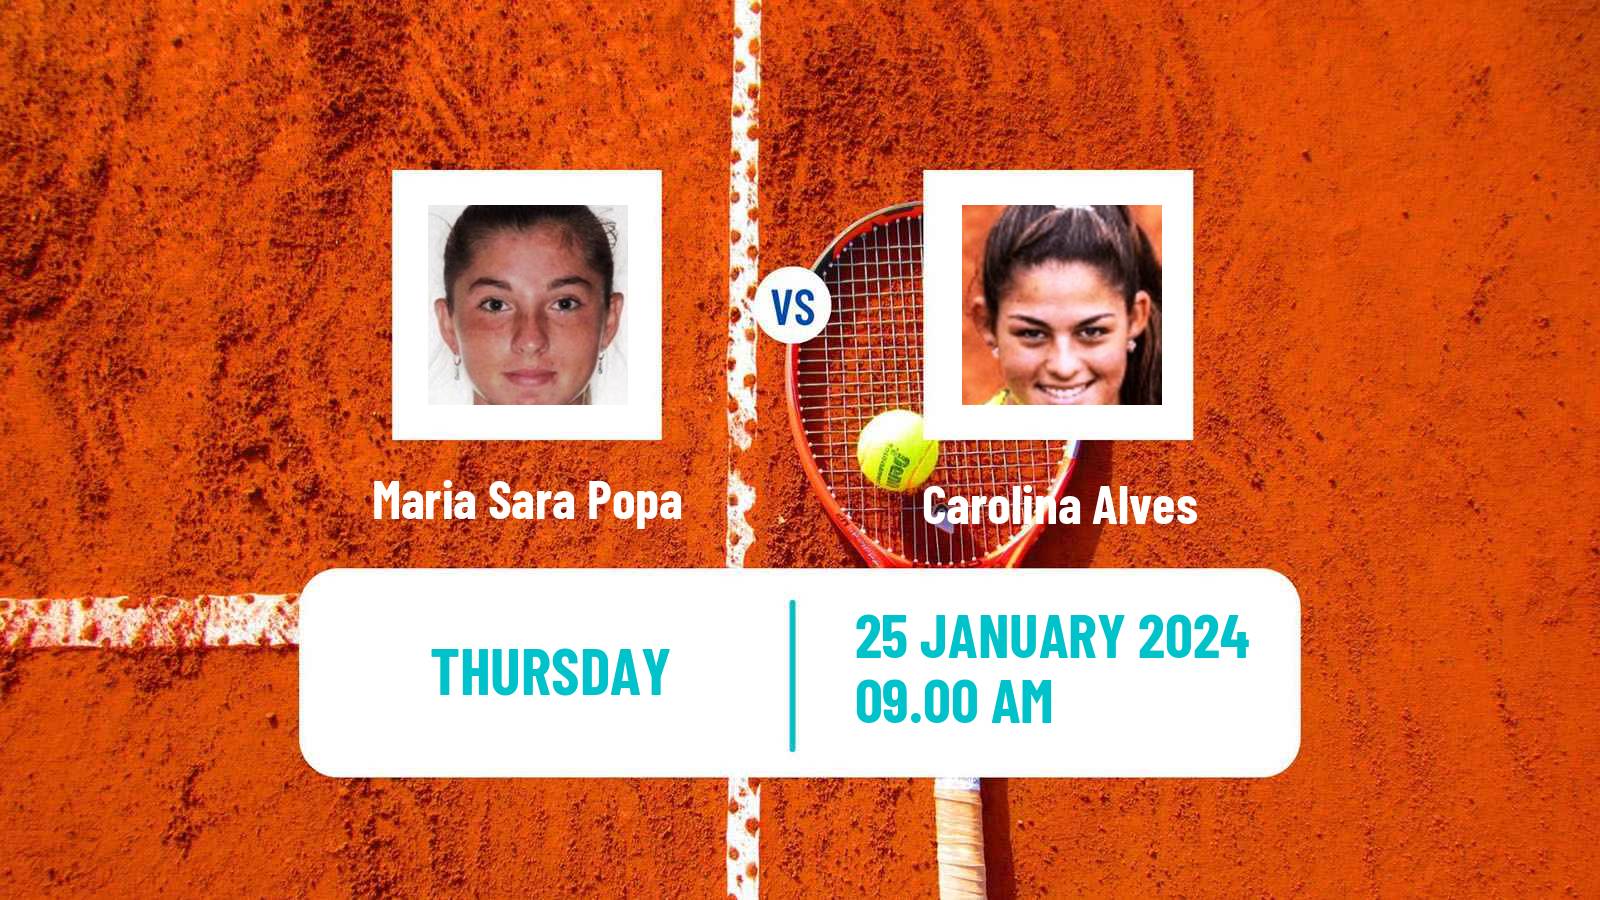 Tennis ITF W35 Buenos Aires 2 Women Maria Sara Popa - Carolina Alves